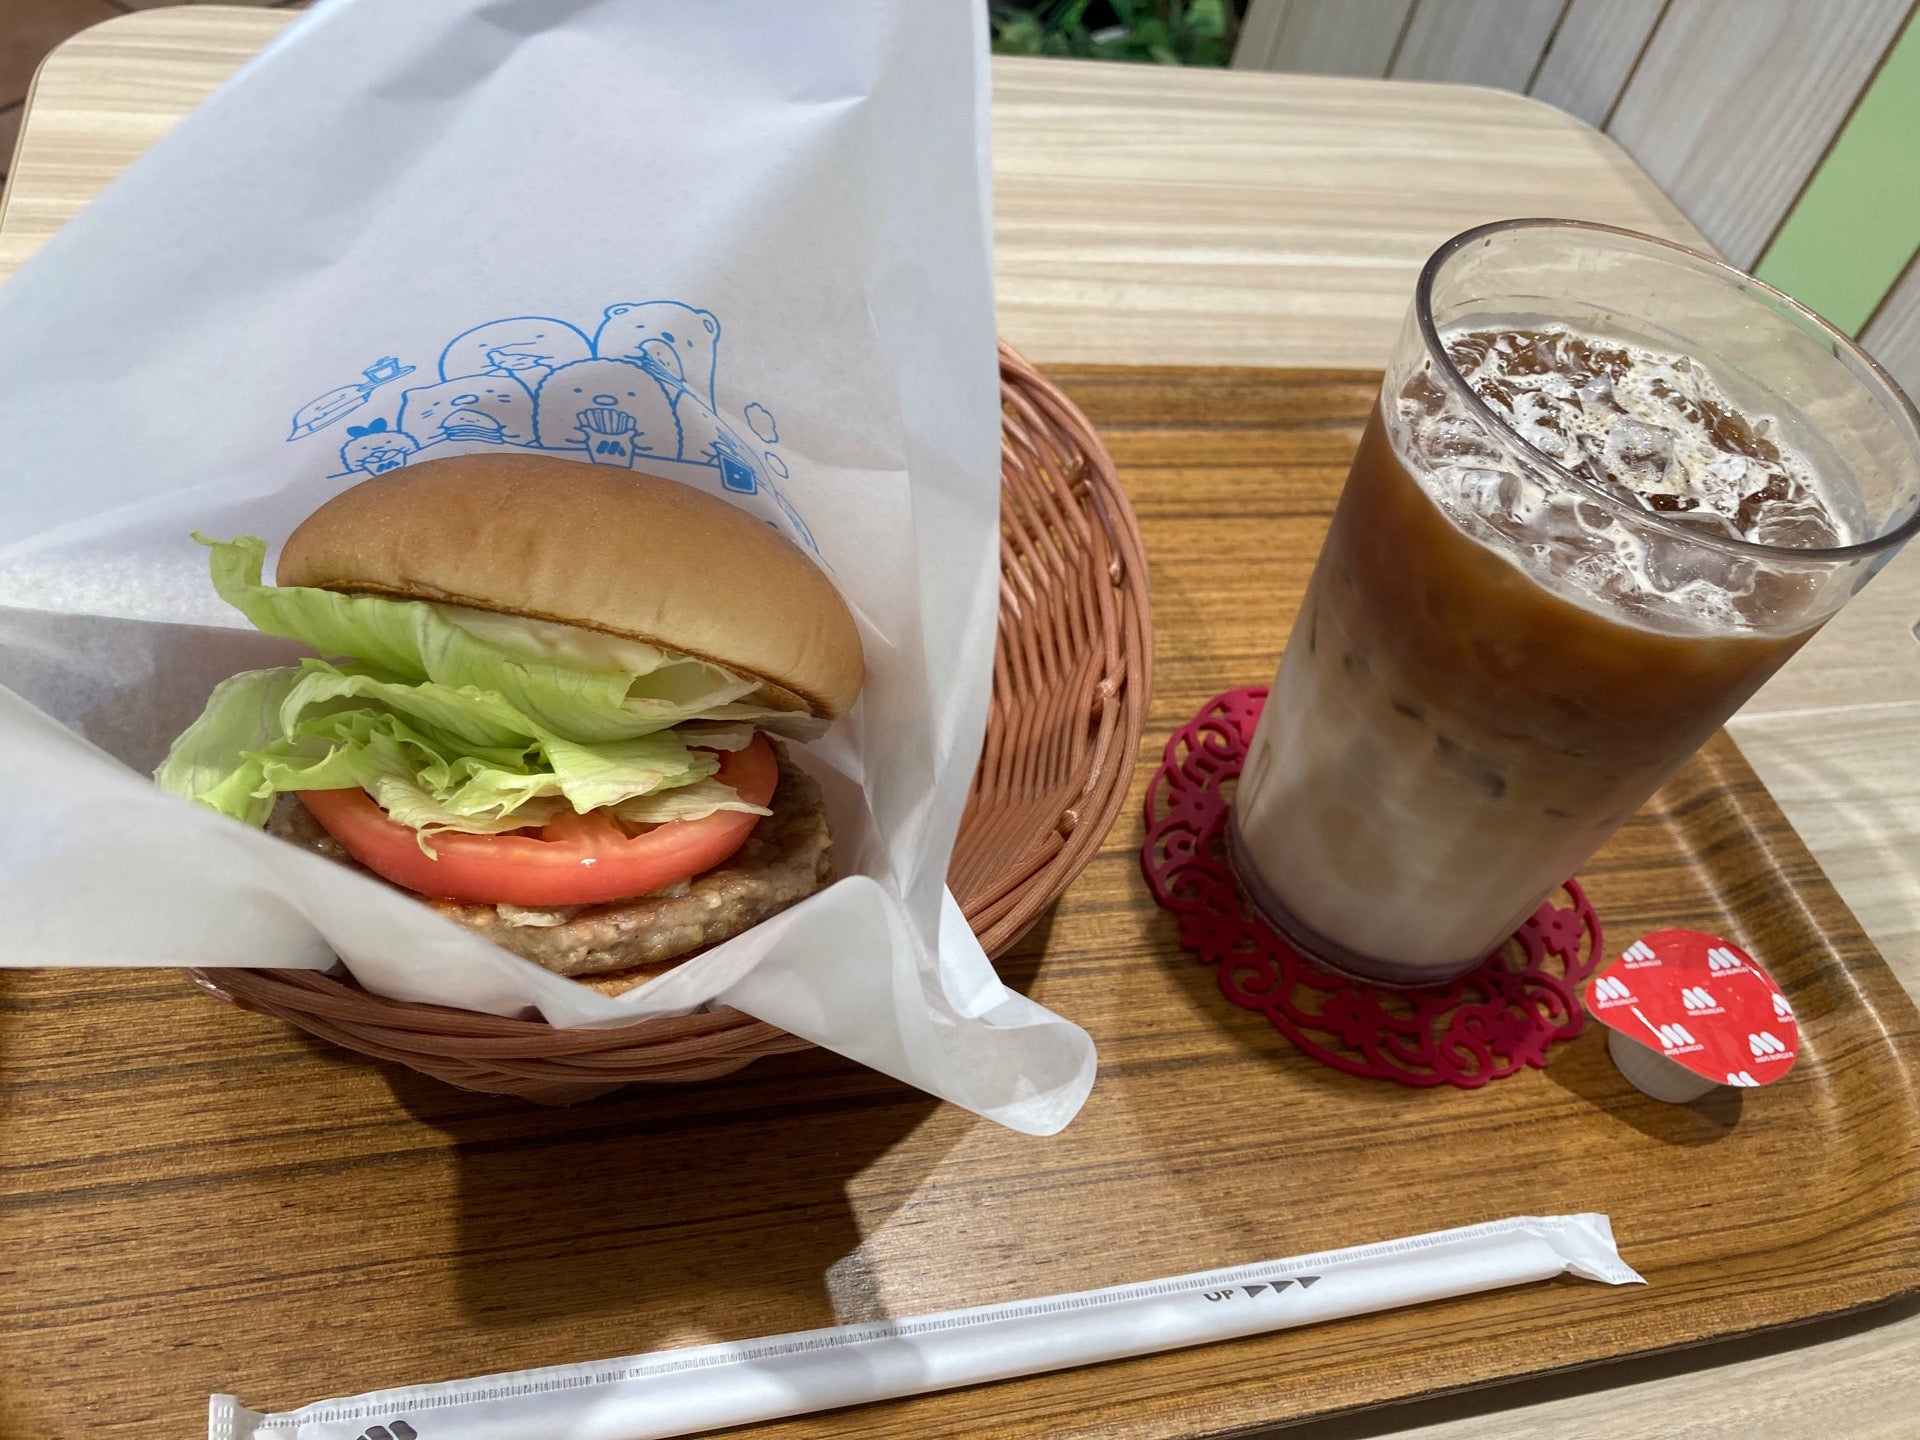 MOS Burger (モスバーガー)